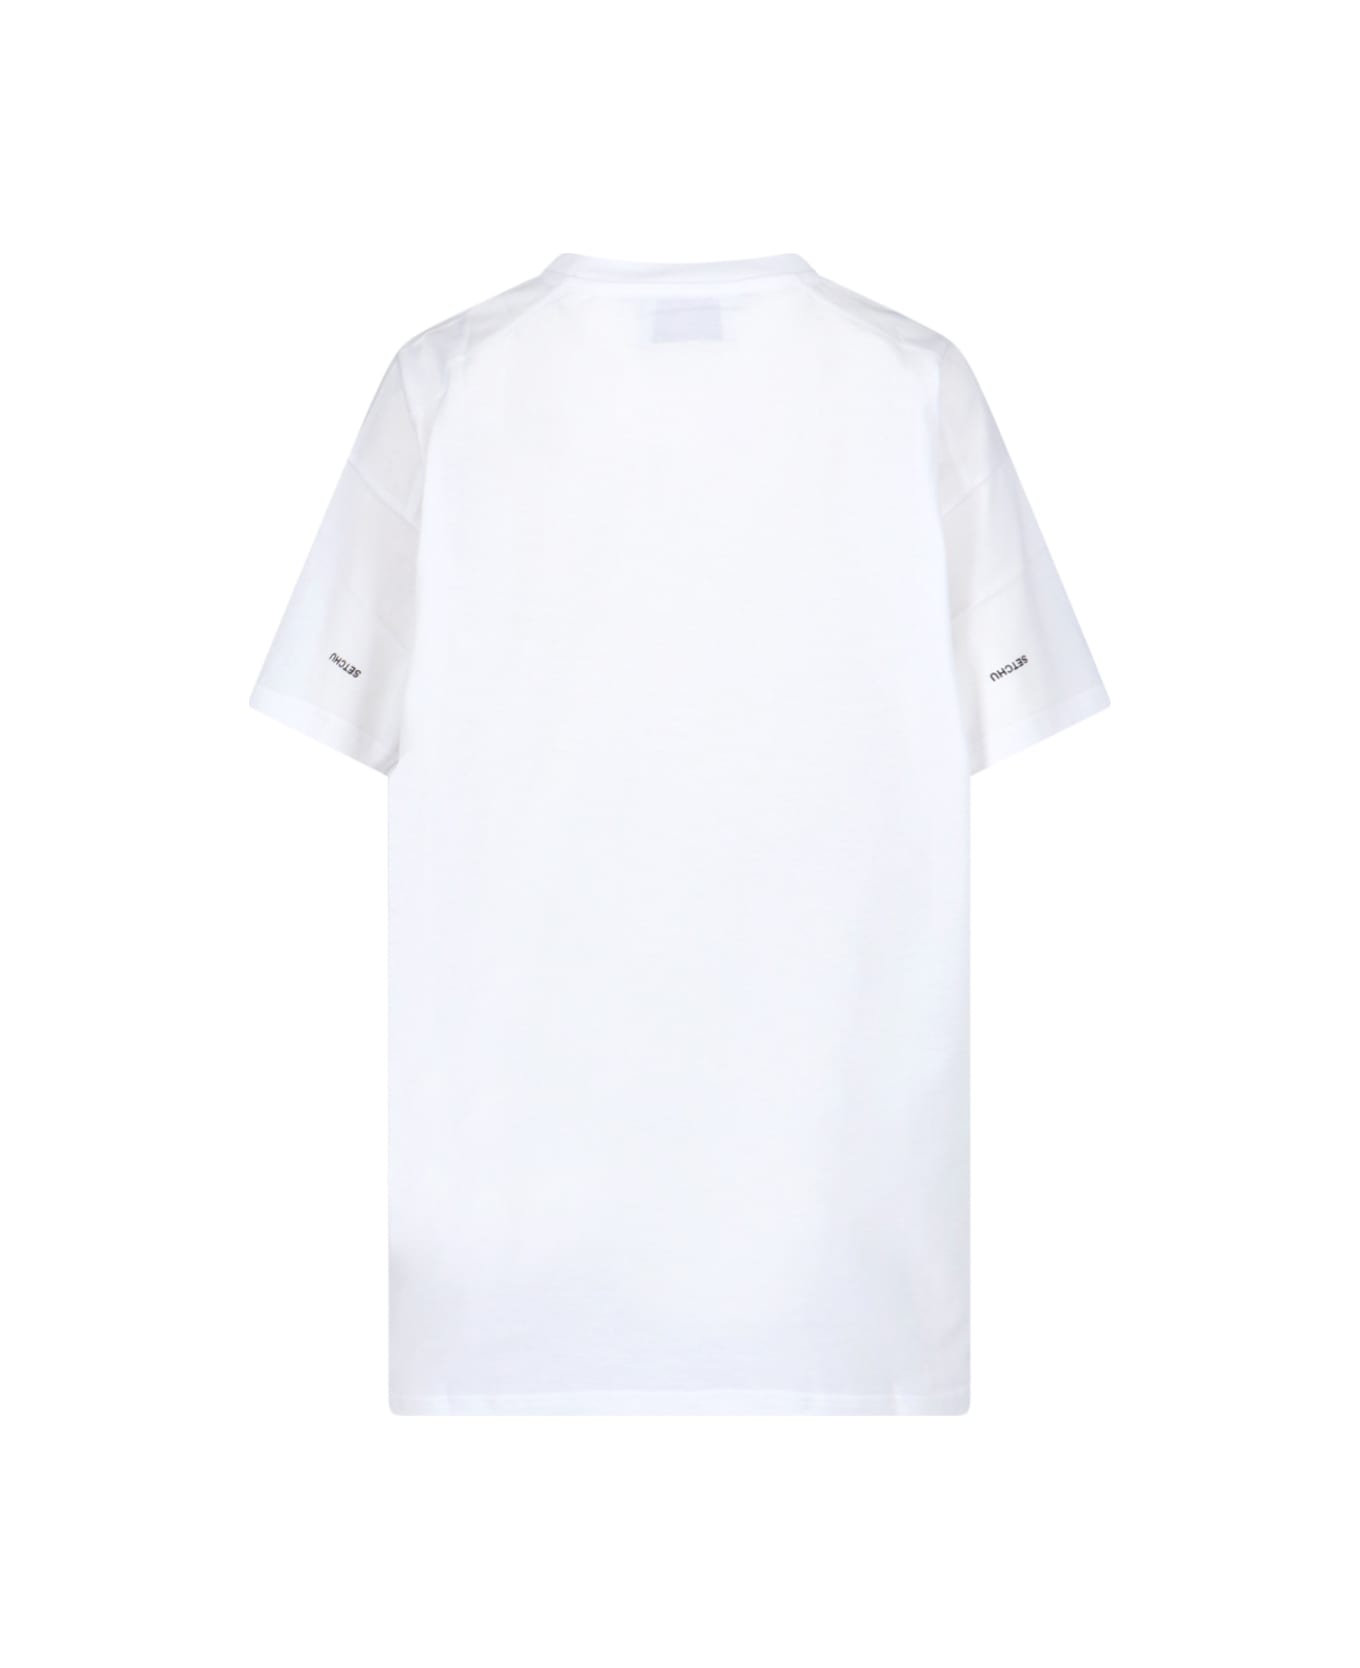 Setchu Logo T-shirt - White Tシャツ